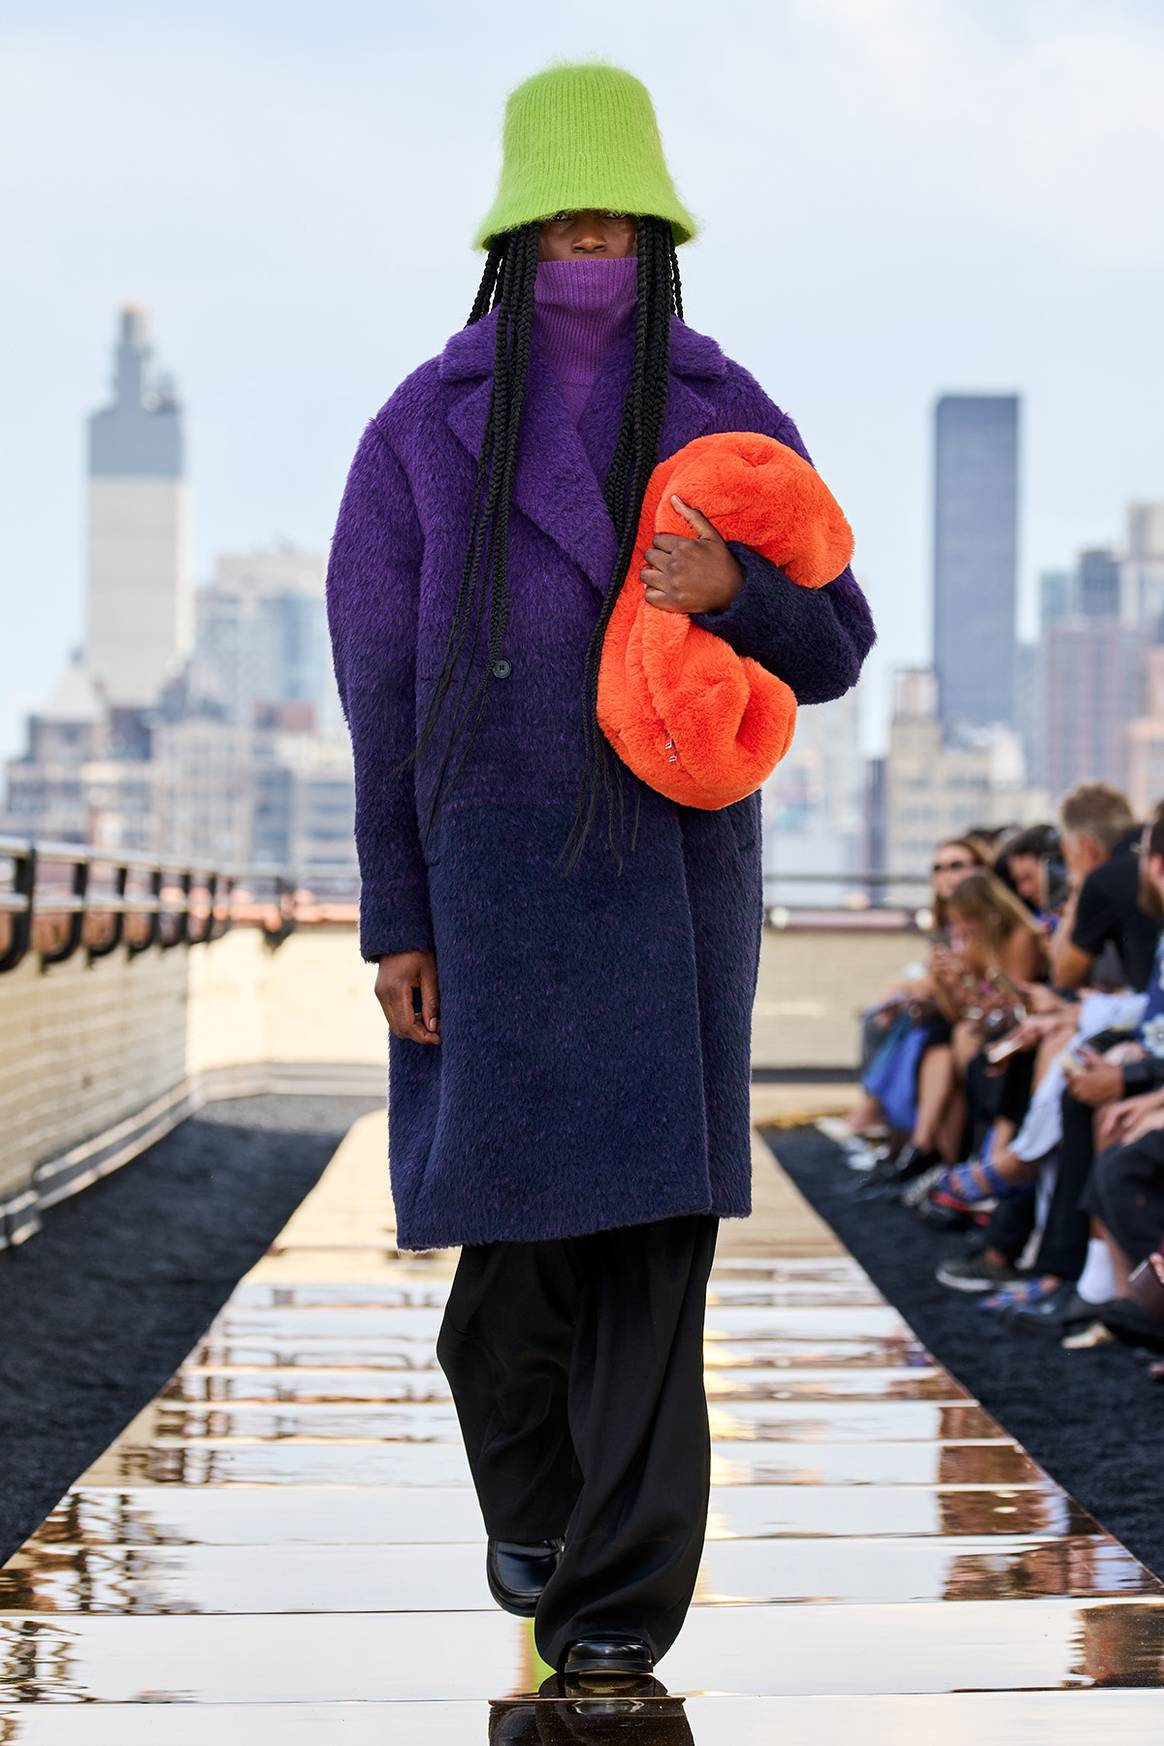 Photo Credits: COS, desfile de presentación de la colección Otoño/Invierno FW22 durante la New York Fashion Week. Fotografía de cortesía.